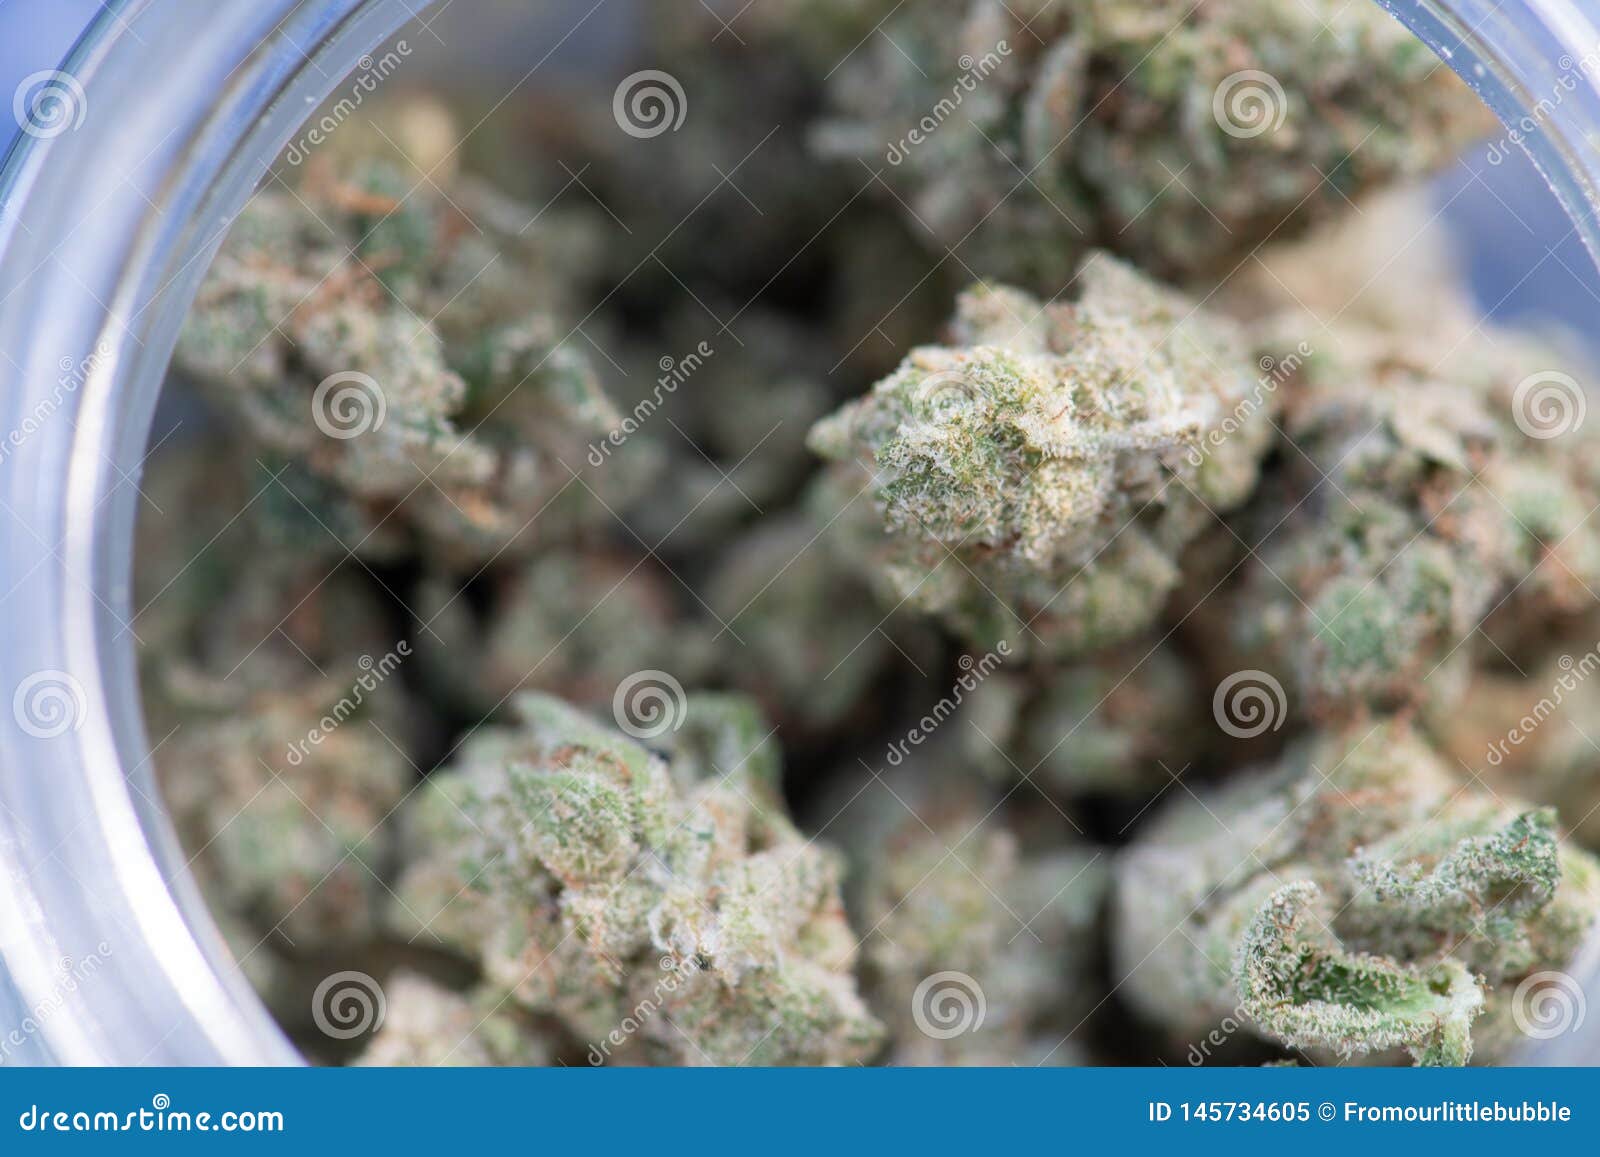 Крышка марихуаны фото обыска наркотиков